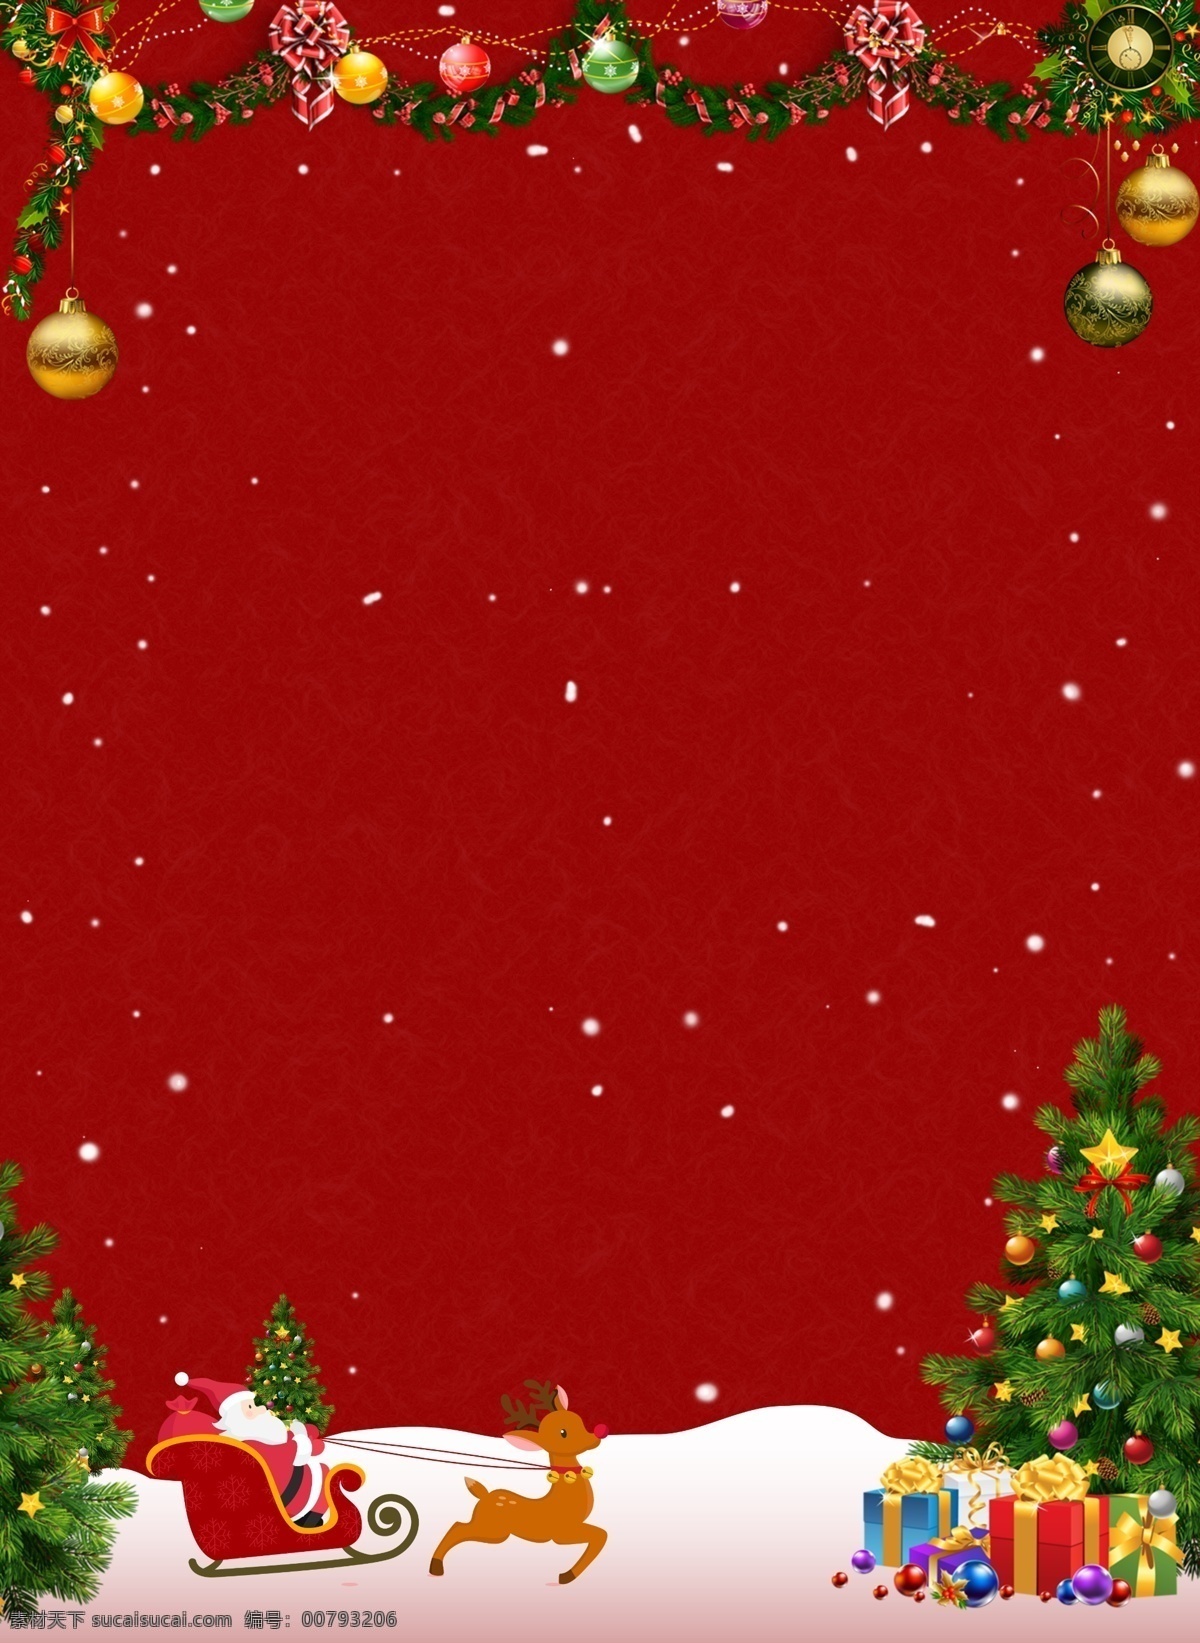 喜庆 坐在 雪橇 上 圣诞老人 平安夜 背景 圣诞树 礼物 雪花 背景素材 坐 雪地 圣诞节背景 圣诞来了 圣诞背景 圣诞活动背景 节日背景 广告背景